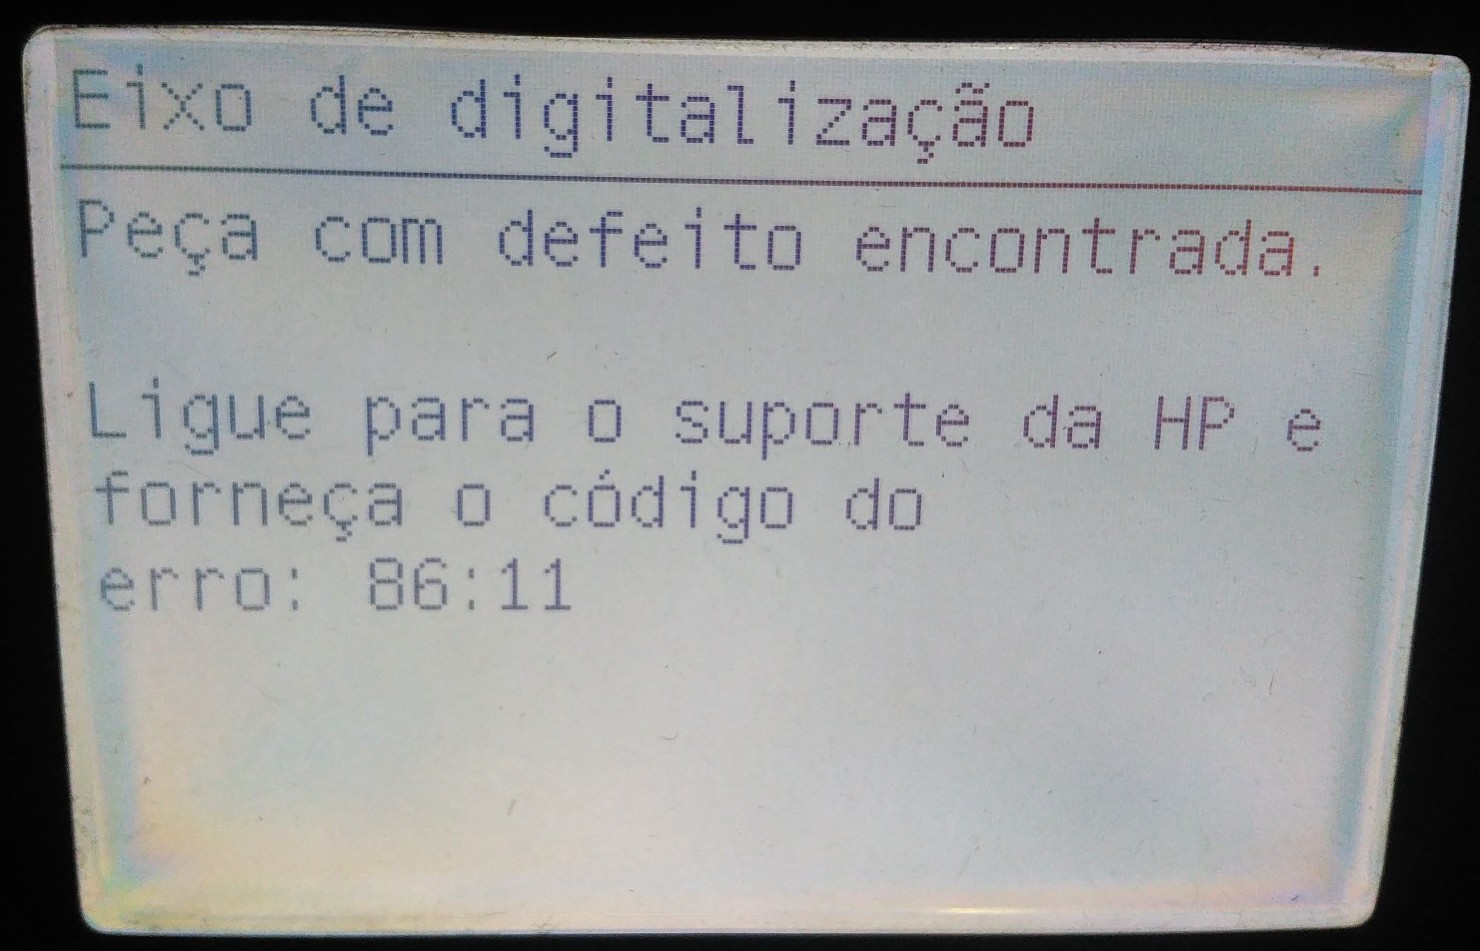 Mensagem de erro na Impressora Plotter 86:11 Peça com defeito encontrada. Ligue para o suporte da HP e forneça o código do erro: 86:11